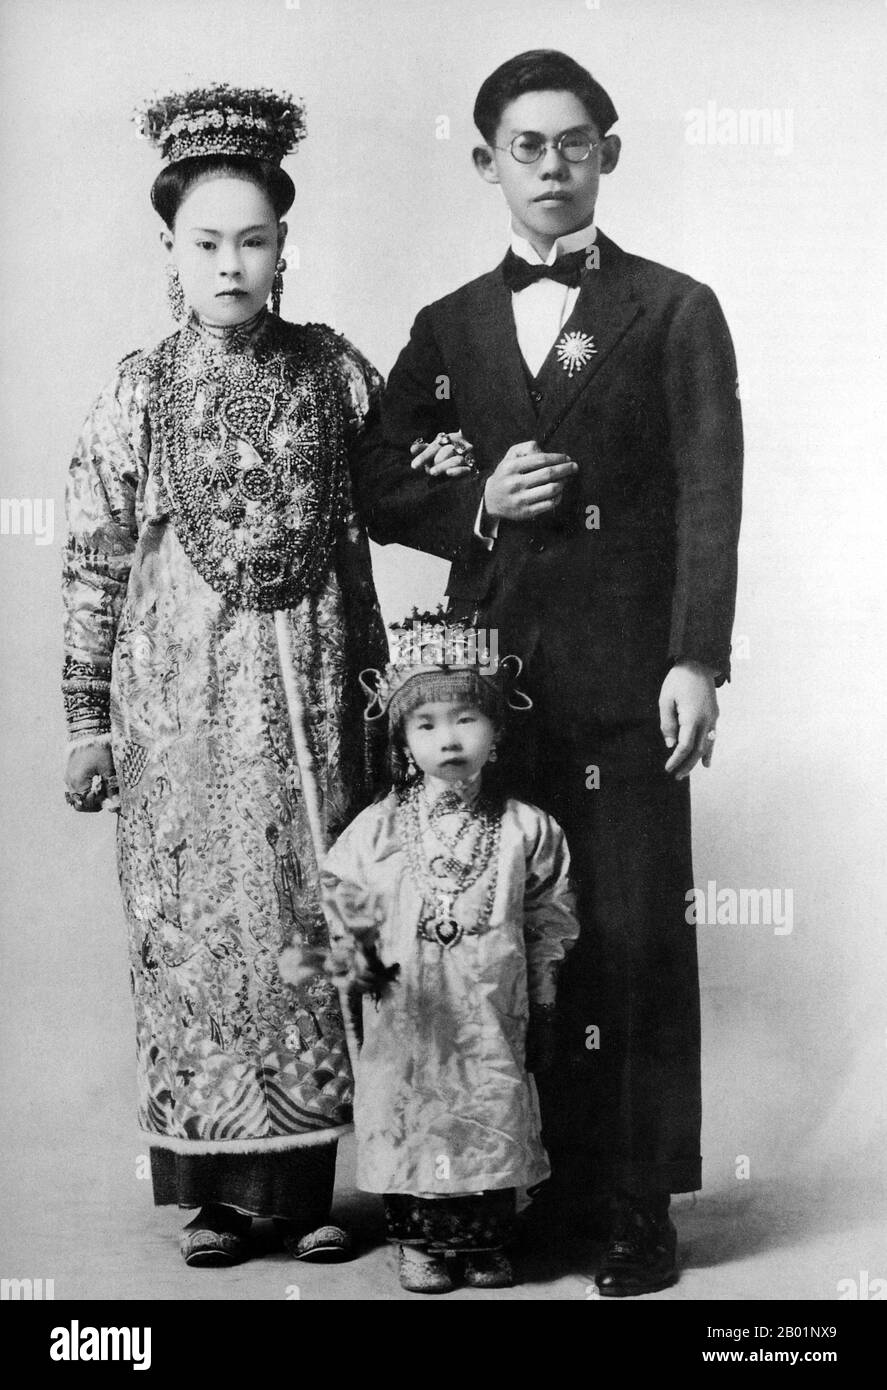 Malaysia/Singapur: Eine Peranakan Braut und Bräutigam mit der winzigen Brautjungfer Penang, Anfang des 20. Jahrhunderts. Peranakan Chinese und Baba-Nyonya sind die Bezeichnungen für die Nachkommen chinesischer Einwanderer aus dem späten 15. Und 16. Jahrhundert, die während der Kolonialzeit in den malaiisch-indonesischen Archipel von Nusantara kamen. Mitglieder dieser Gemeinde in Malaysia bezeichnen sich als „Nyonya-Baba“ oder „Baba-Nyonya“. Nyonya ist der Begriff für die Weibchen und Baba für die Männchen. Sie gilt insbesondere für die ethnischen chinesischen Bevölkerungsgruppen der British Straits Settlements in Malaya und der von den Niederlanden kontrollierten Insel Java und anderen Orten Stockfoto